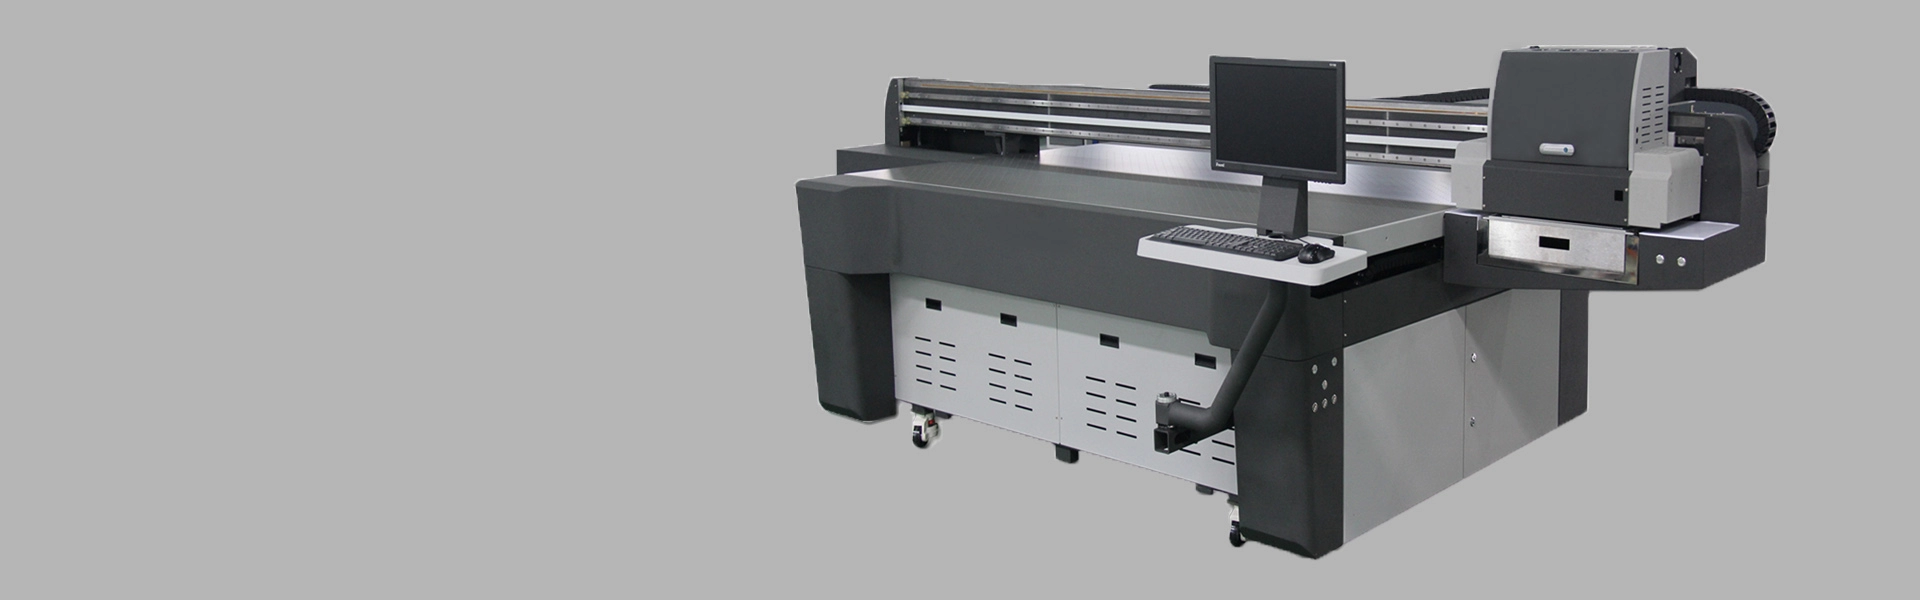 Impresora Ricoh G5 UV U-2513